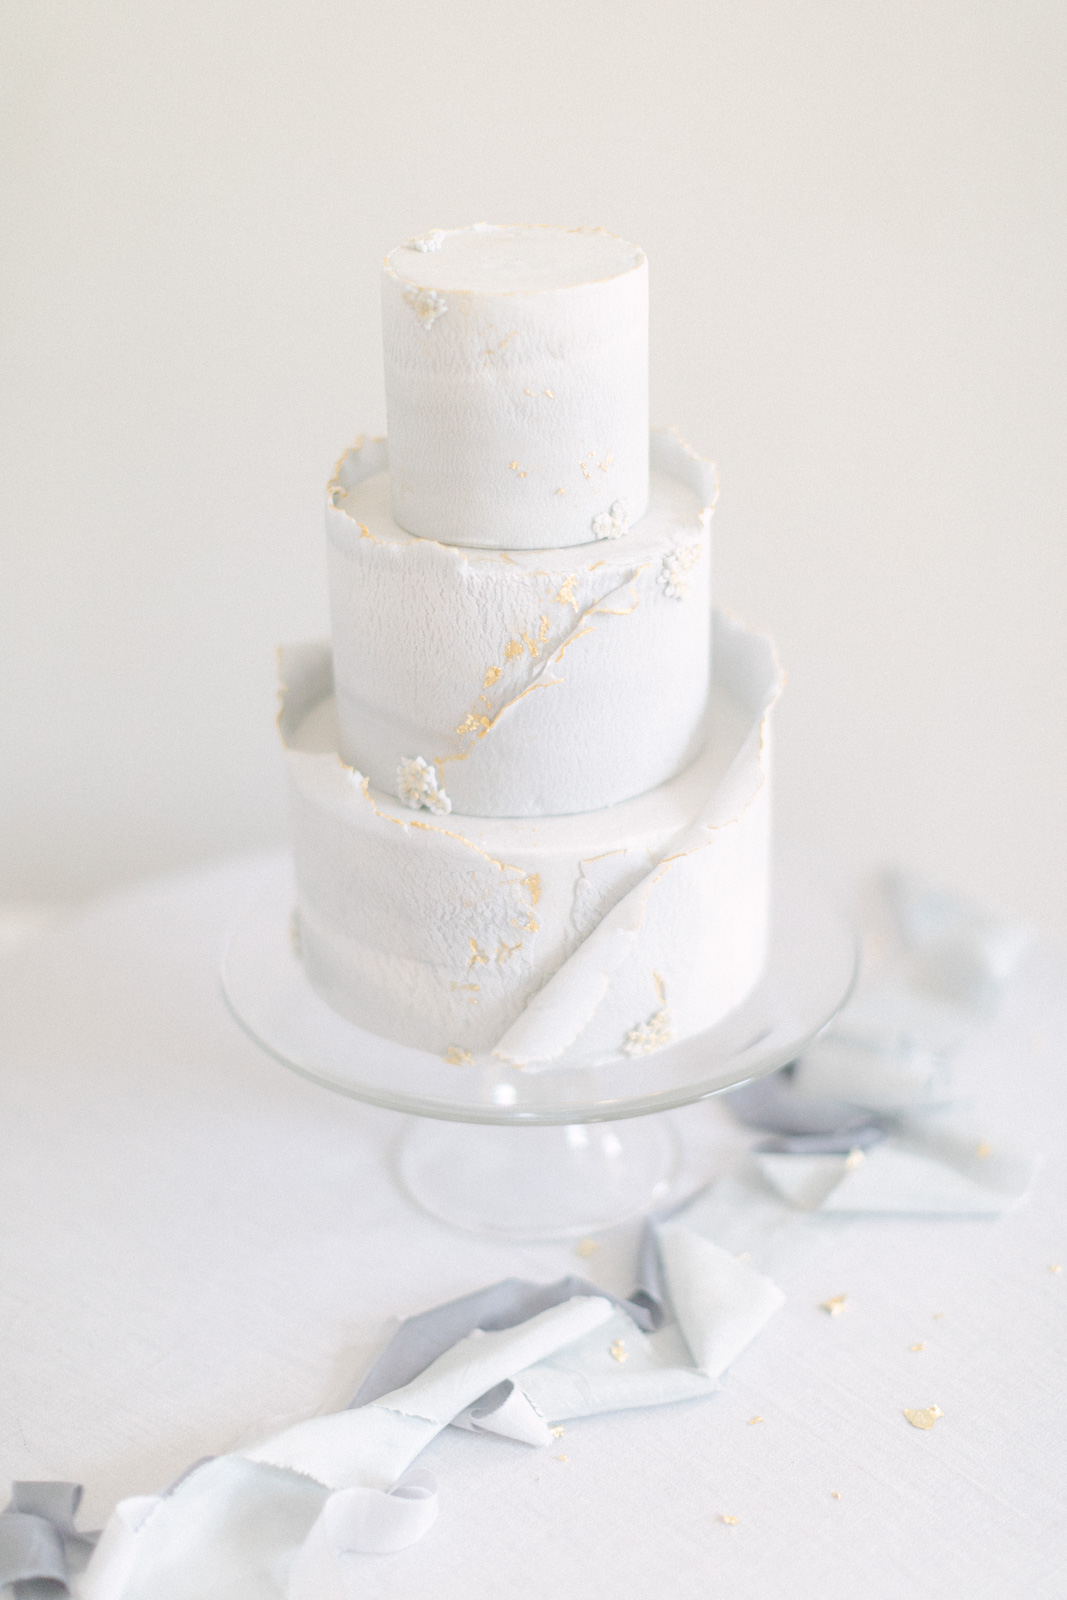 Chateau Mader wedding cake adorned with elegant details